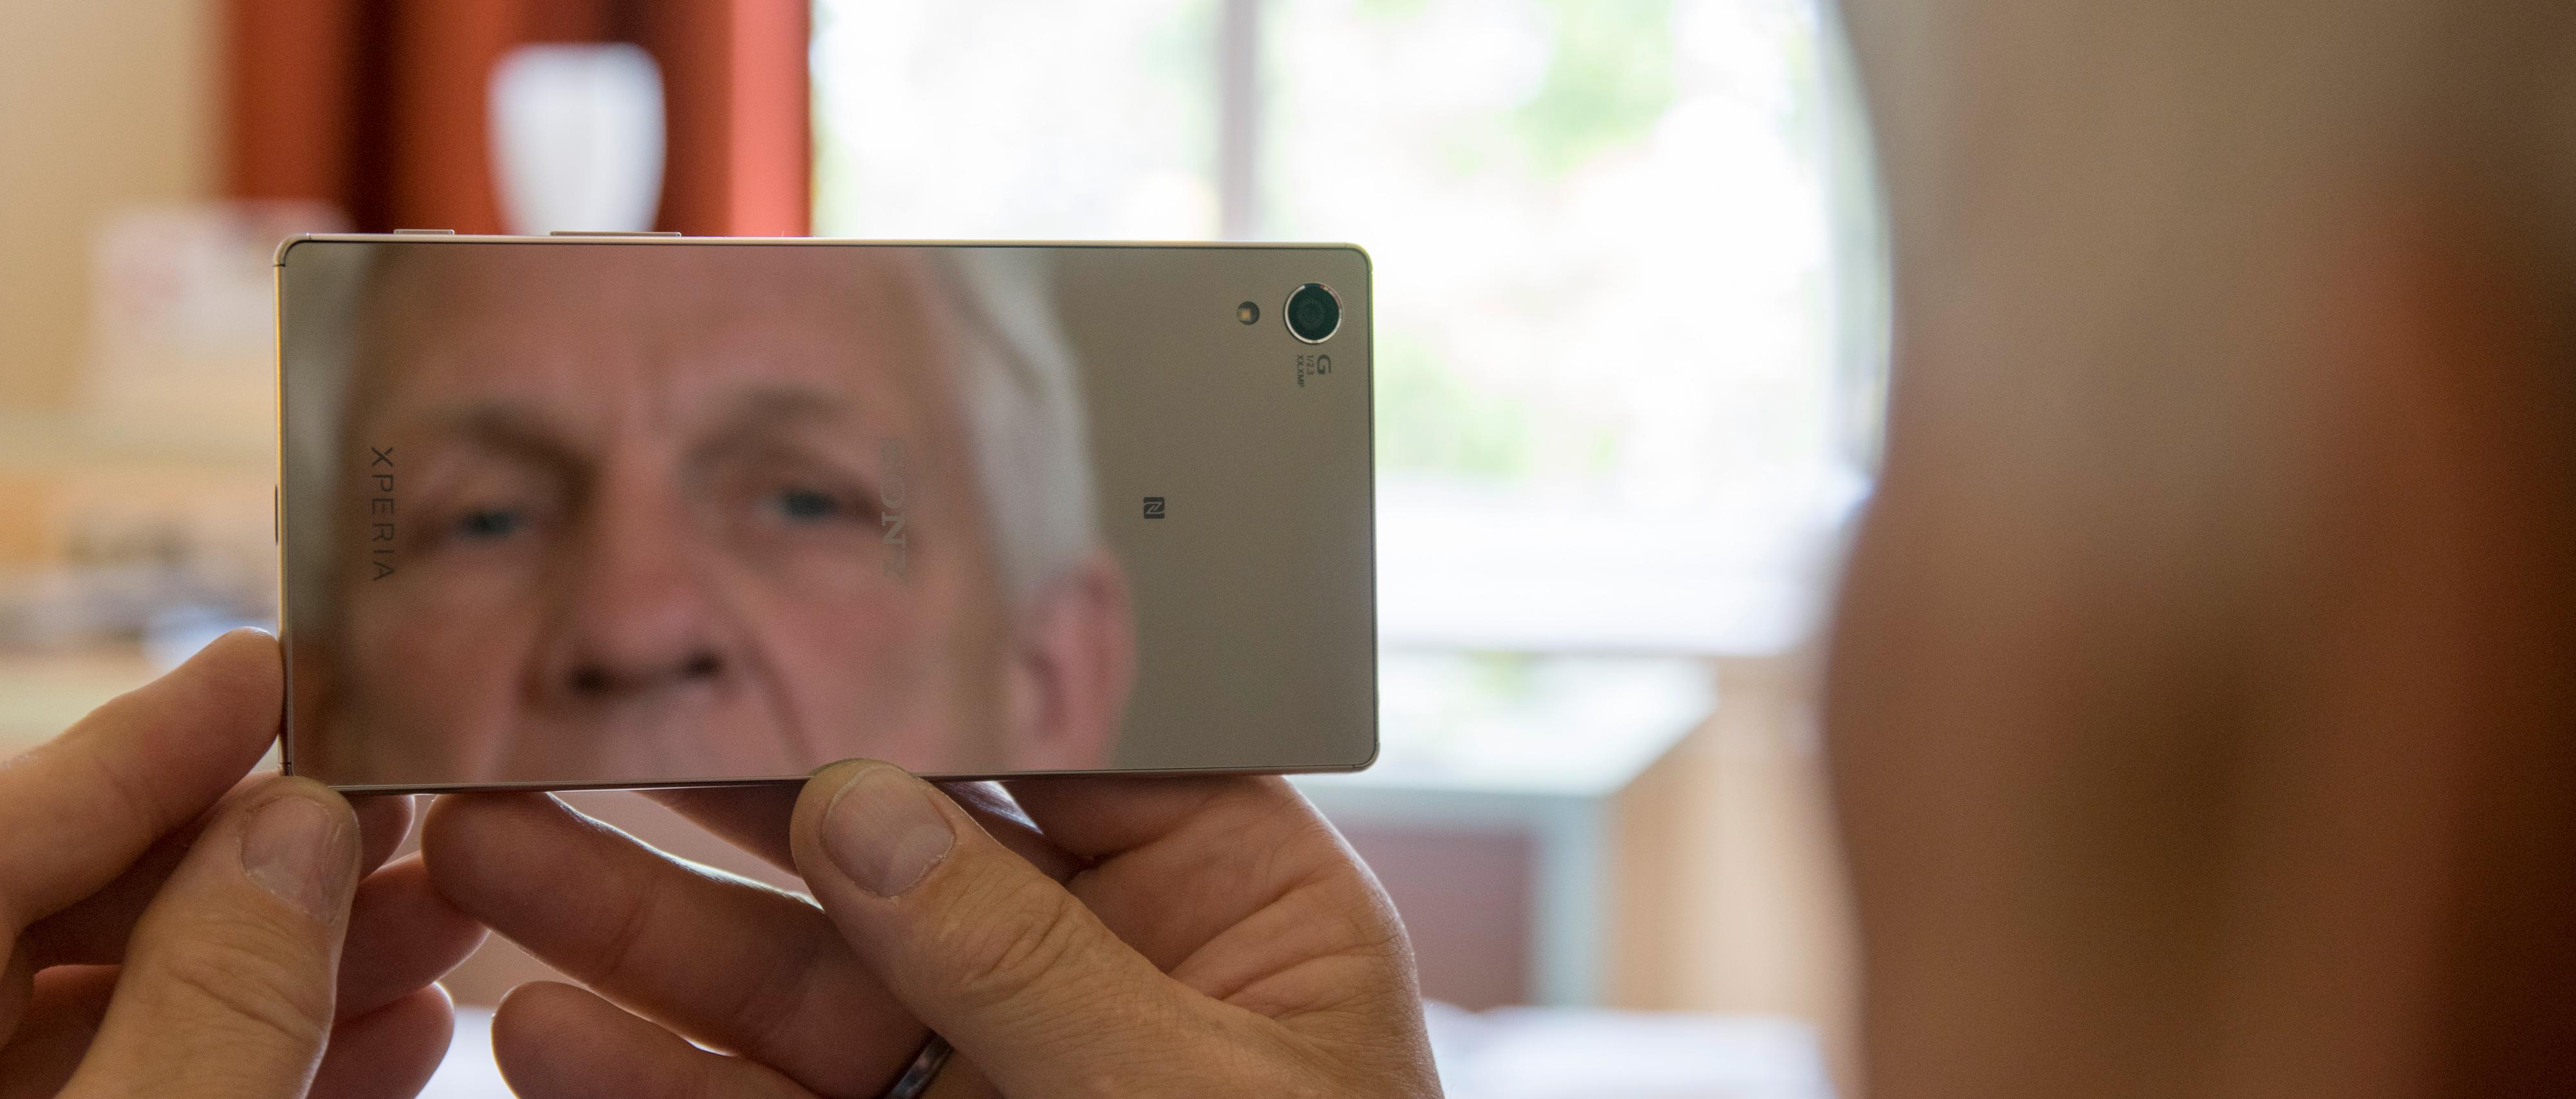 Kollega Odd Richard Valmot knipser en selfie på 23 megapiksler. Den speilblanke baksiden er mer enn tilstrekkelig til å fange opp eventuell spinat mellom tenna. Foto: Finn Jarle Kvalheim, Tek.no